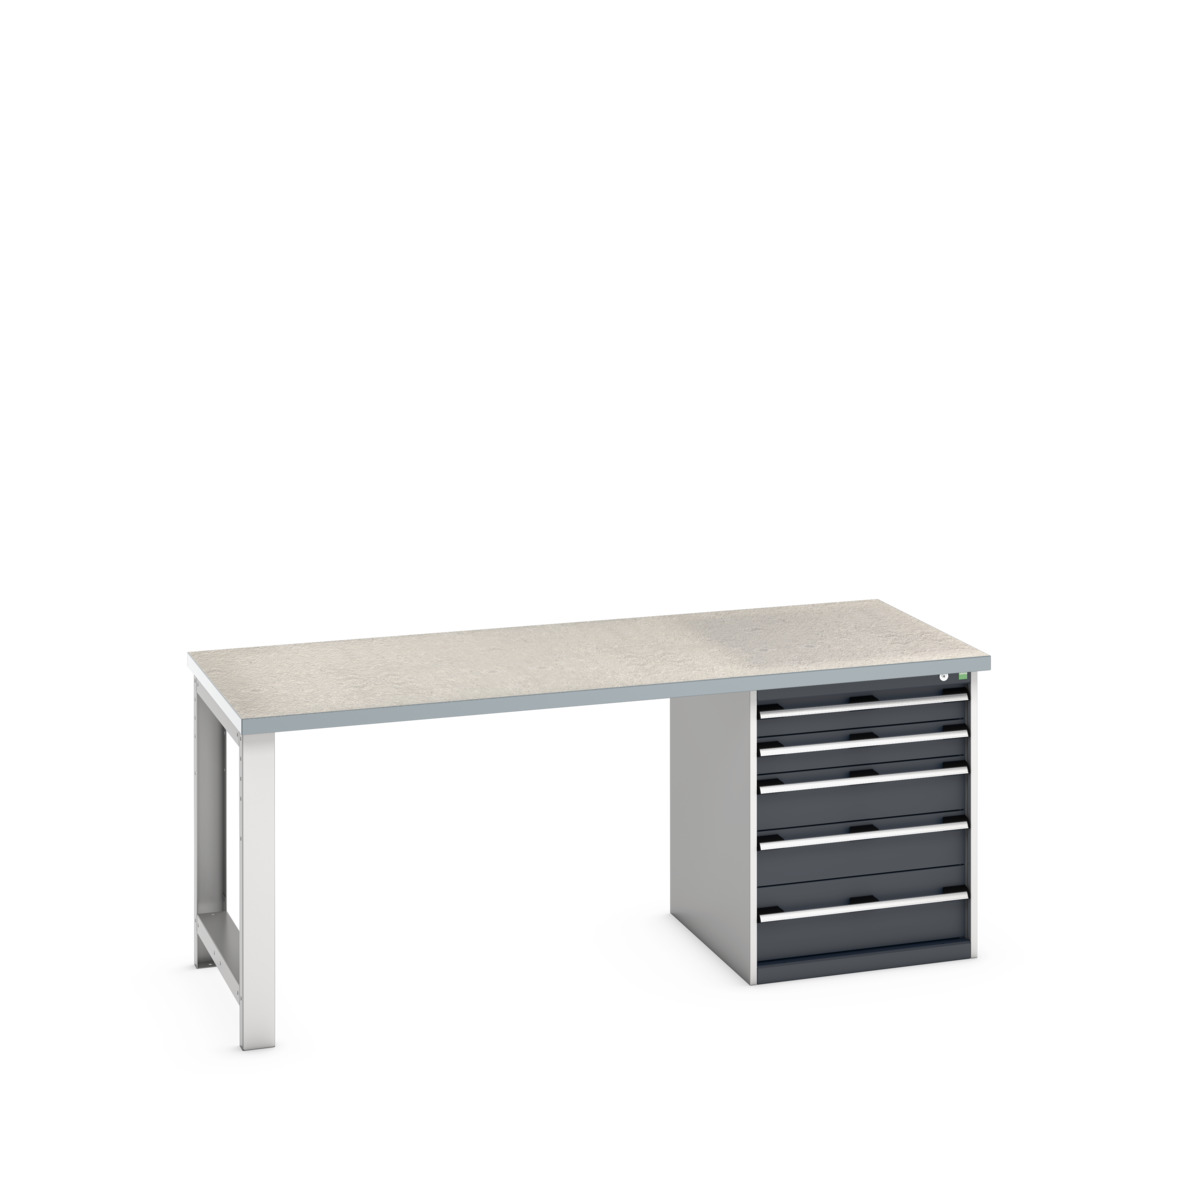 41004112.19V - cubio pedestal bench (lino)